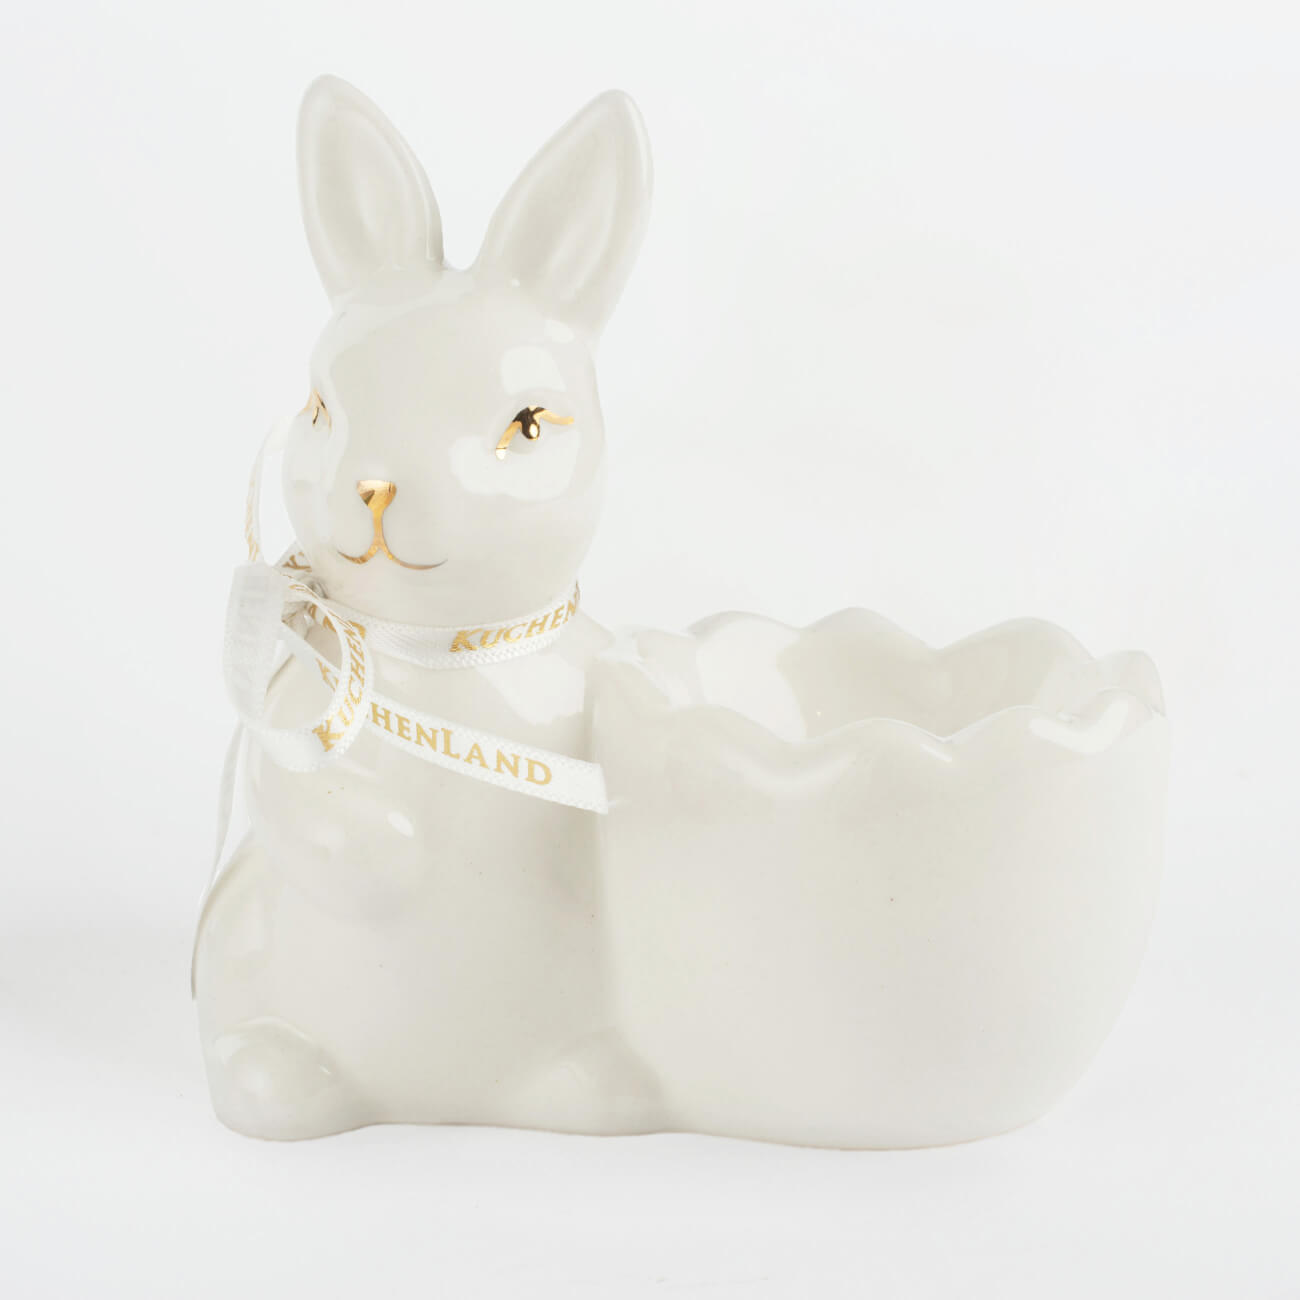 Подставка для яйца, 10 см, керамика, бело-золотистая, Кролик со скорлупкой, Easter gold подставка под телефон денежный кролик гжель с золотом